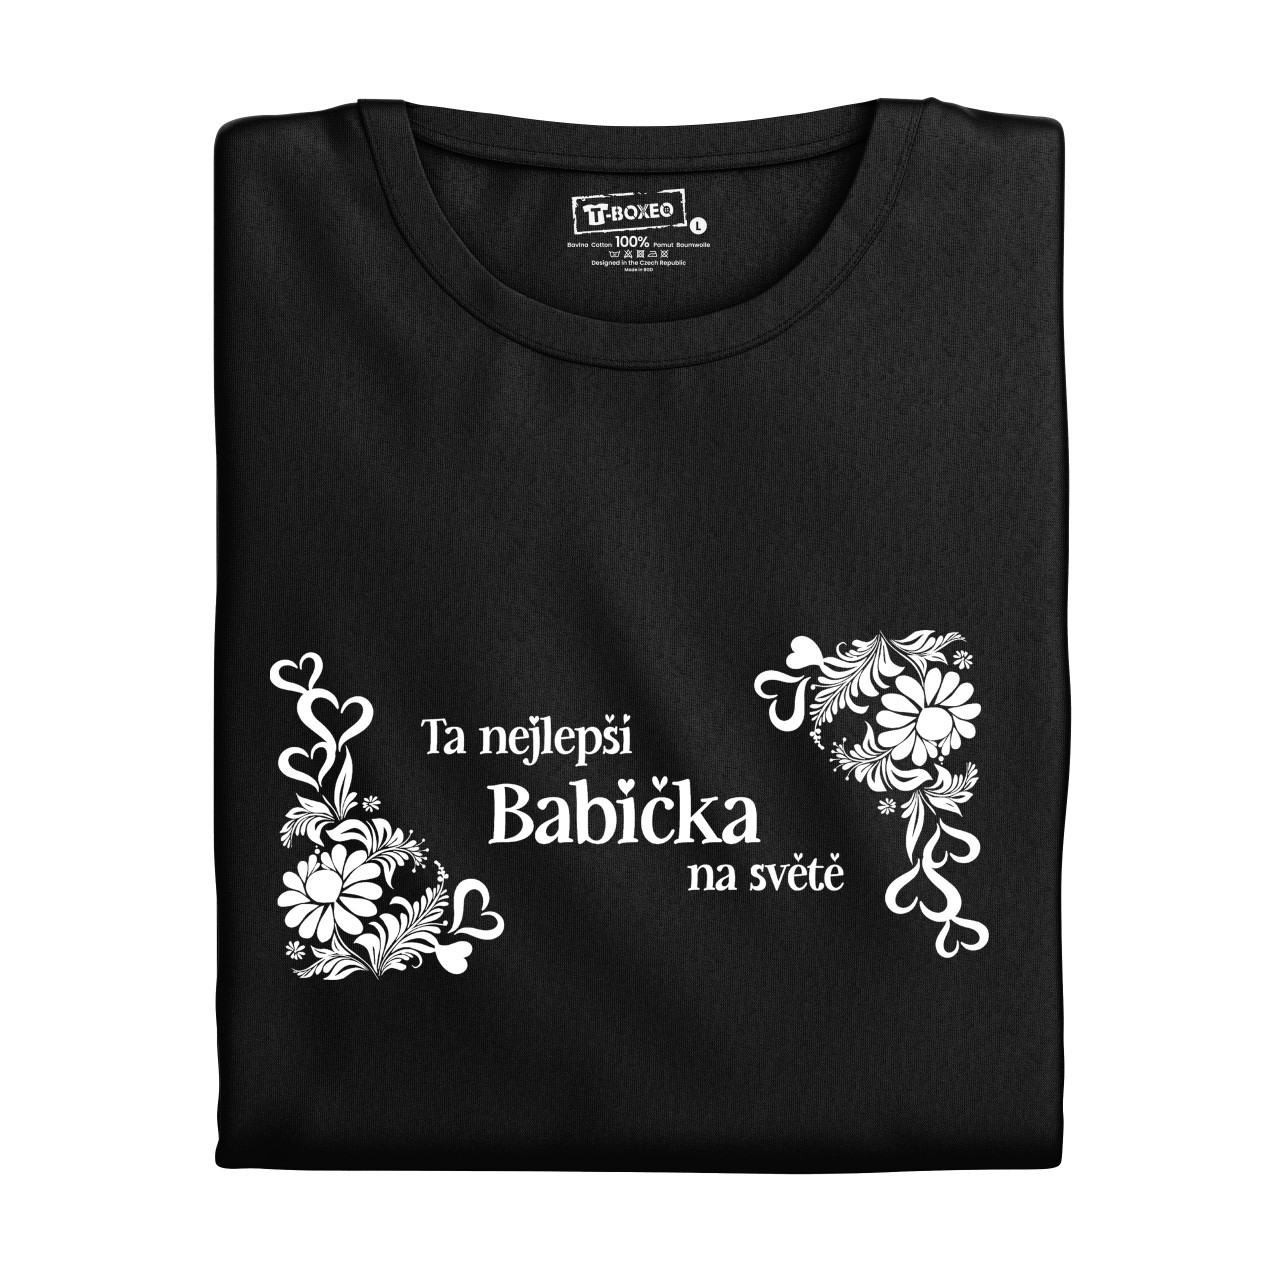 Dámské tričko s potiskem “Jsi ta nejlepší babička na světě”